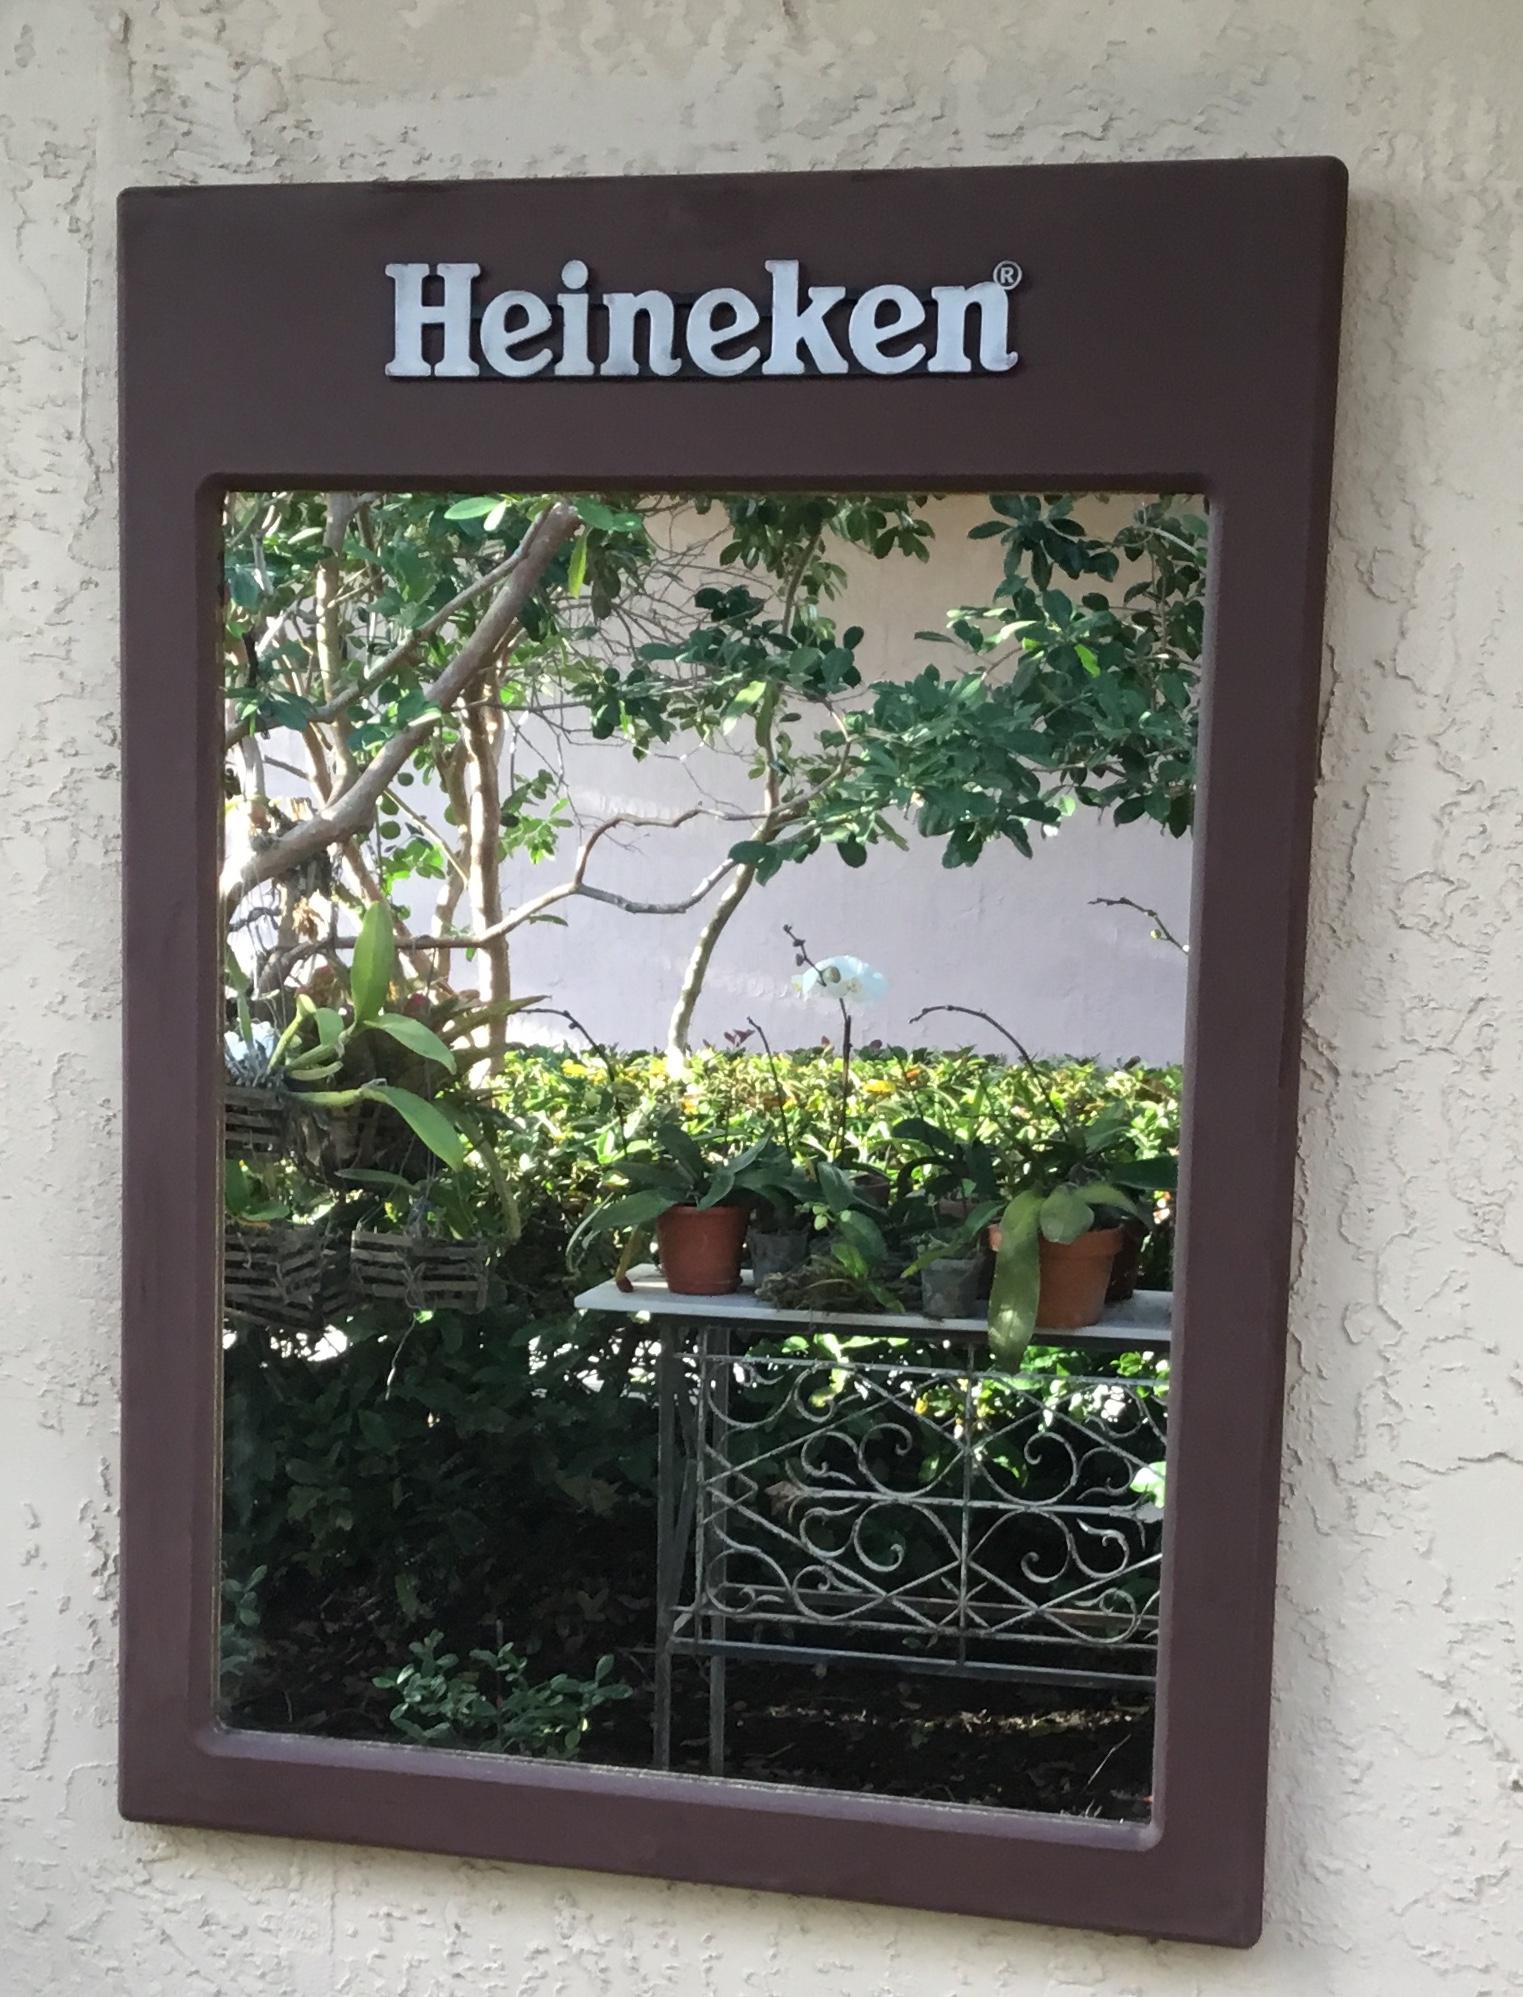 Elégant miroir mural vintage en bois composite, avec l'étiquette publicitaire de la fameuse brasserie Heineken, ce miroir était probablement accroché dans un bar ou un restaurant et pourrait
Soyez un élément décoratif au bon endroit. Le miroir en